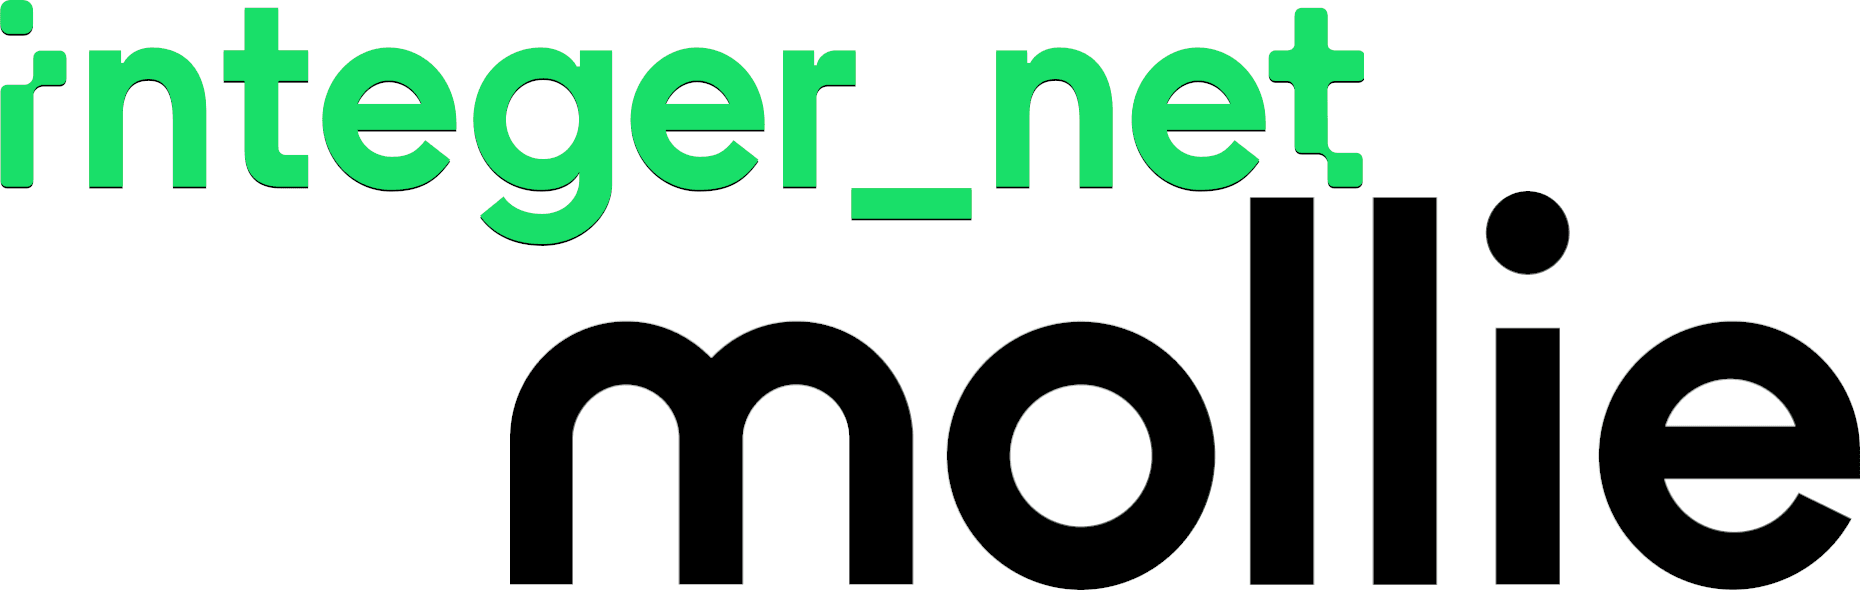 integer_net & mollie Logos